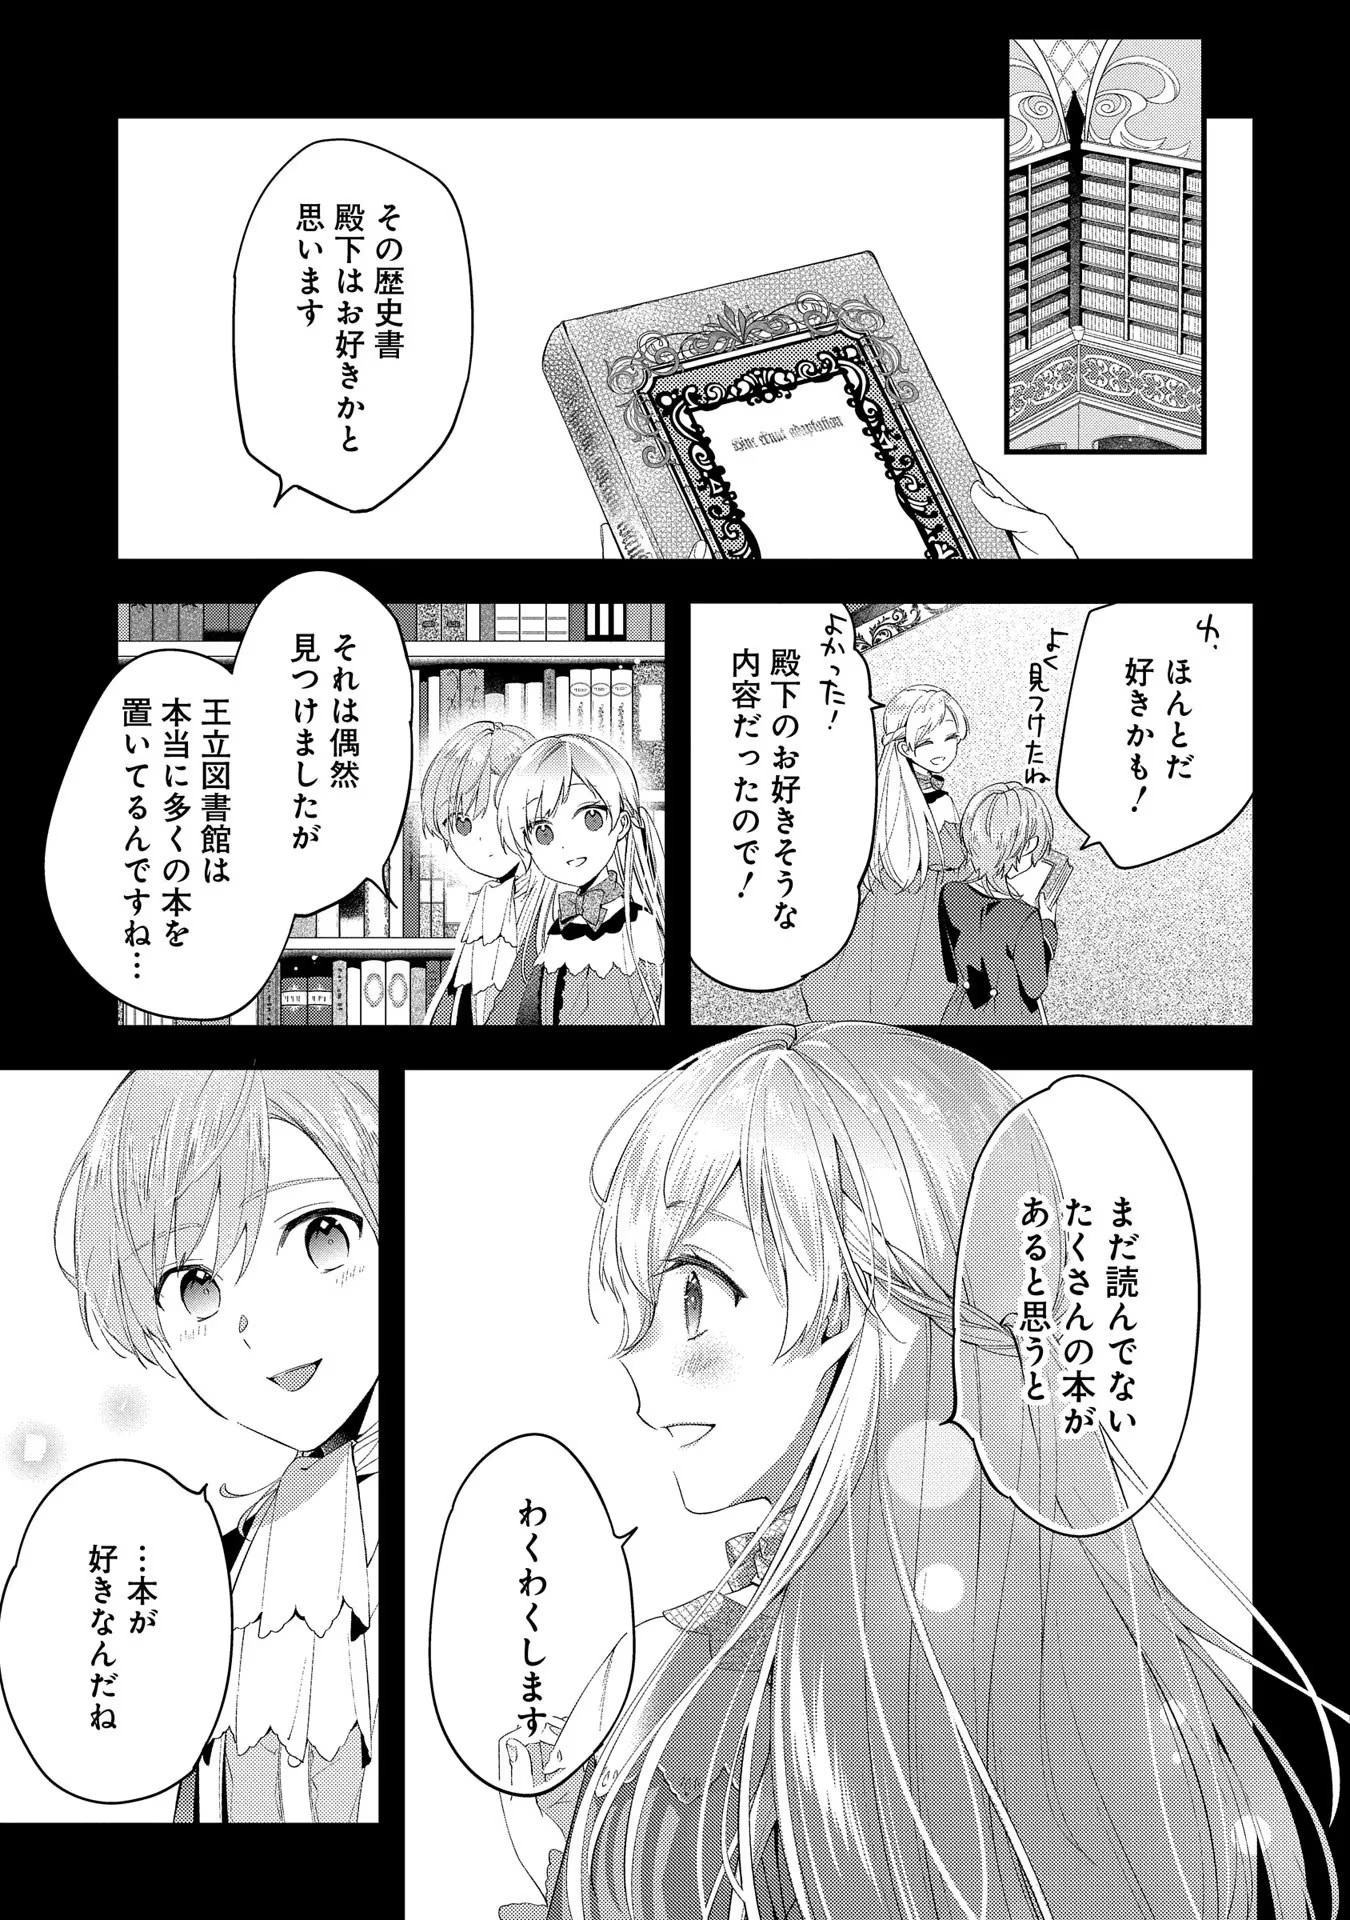 Outaishi ni Konyaku Hakisareta no de, Mou Baka no Furi wa Yameyou to Omoimasu - Chapter 3 - Page 15